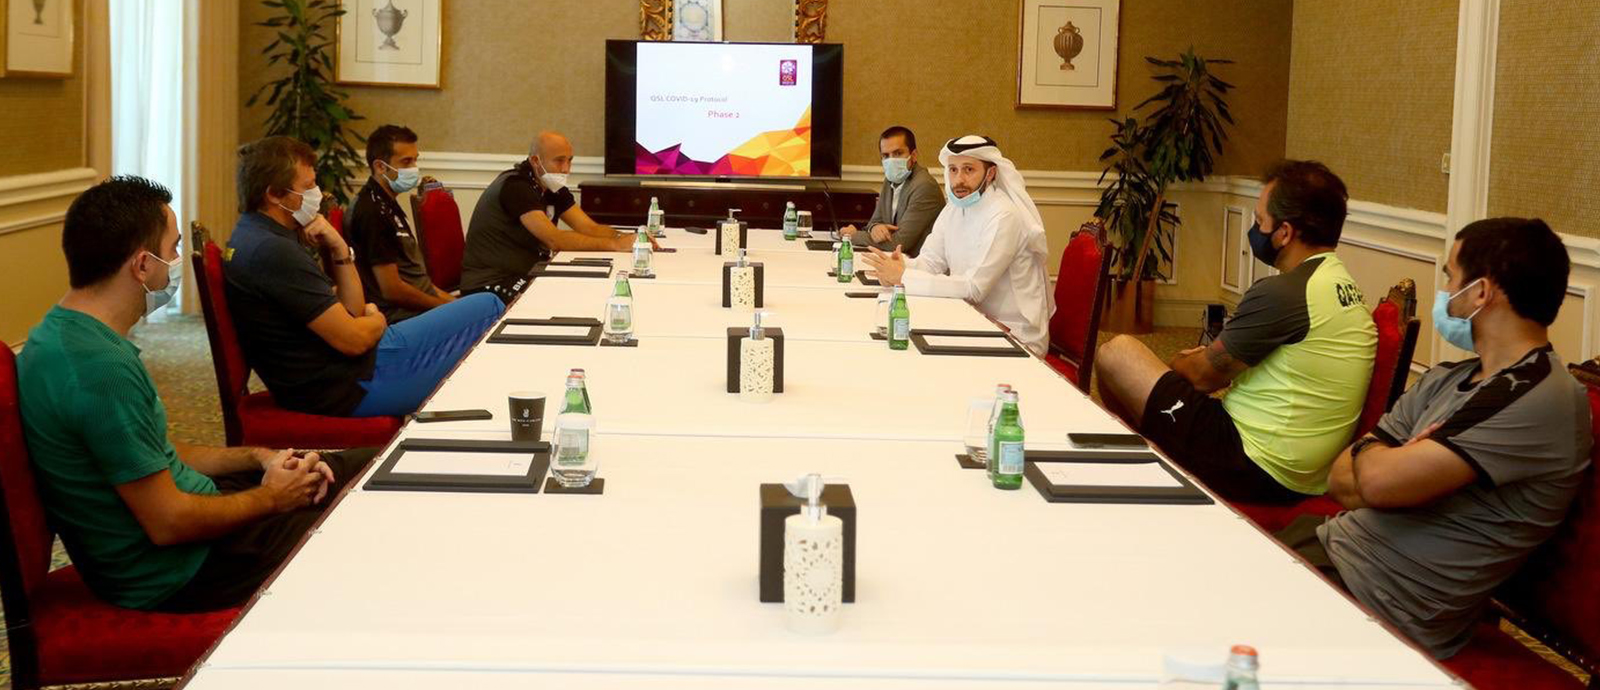 Qatar Stars League meeting with clubs’ coaches